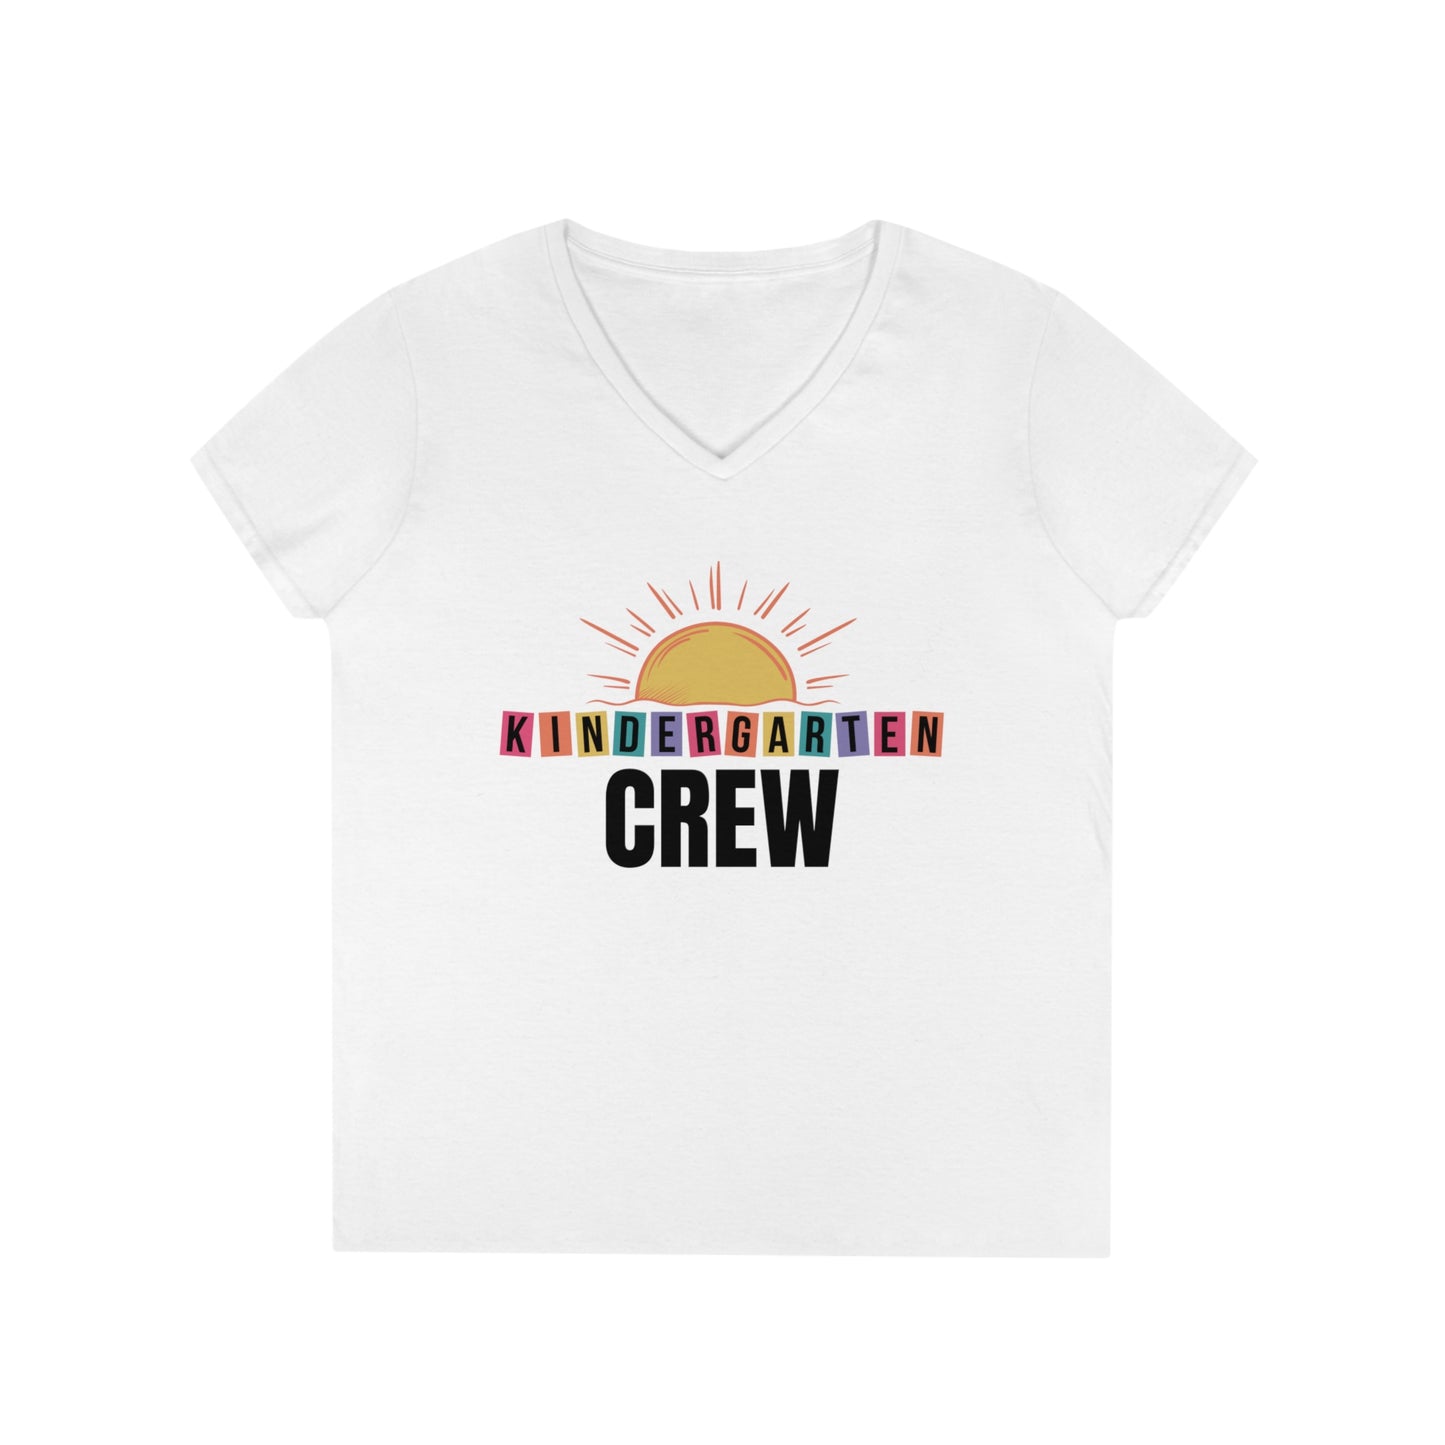 Kindergarten Crew - Ladies' V-Neck T-Shirt